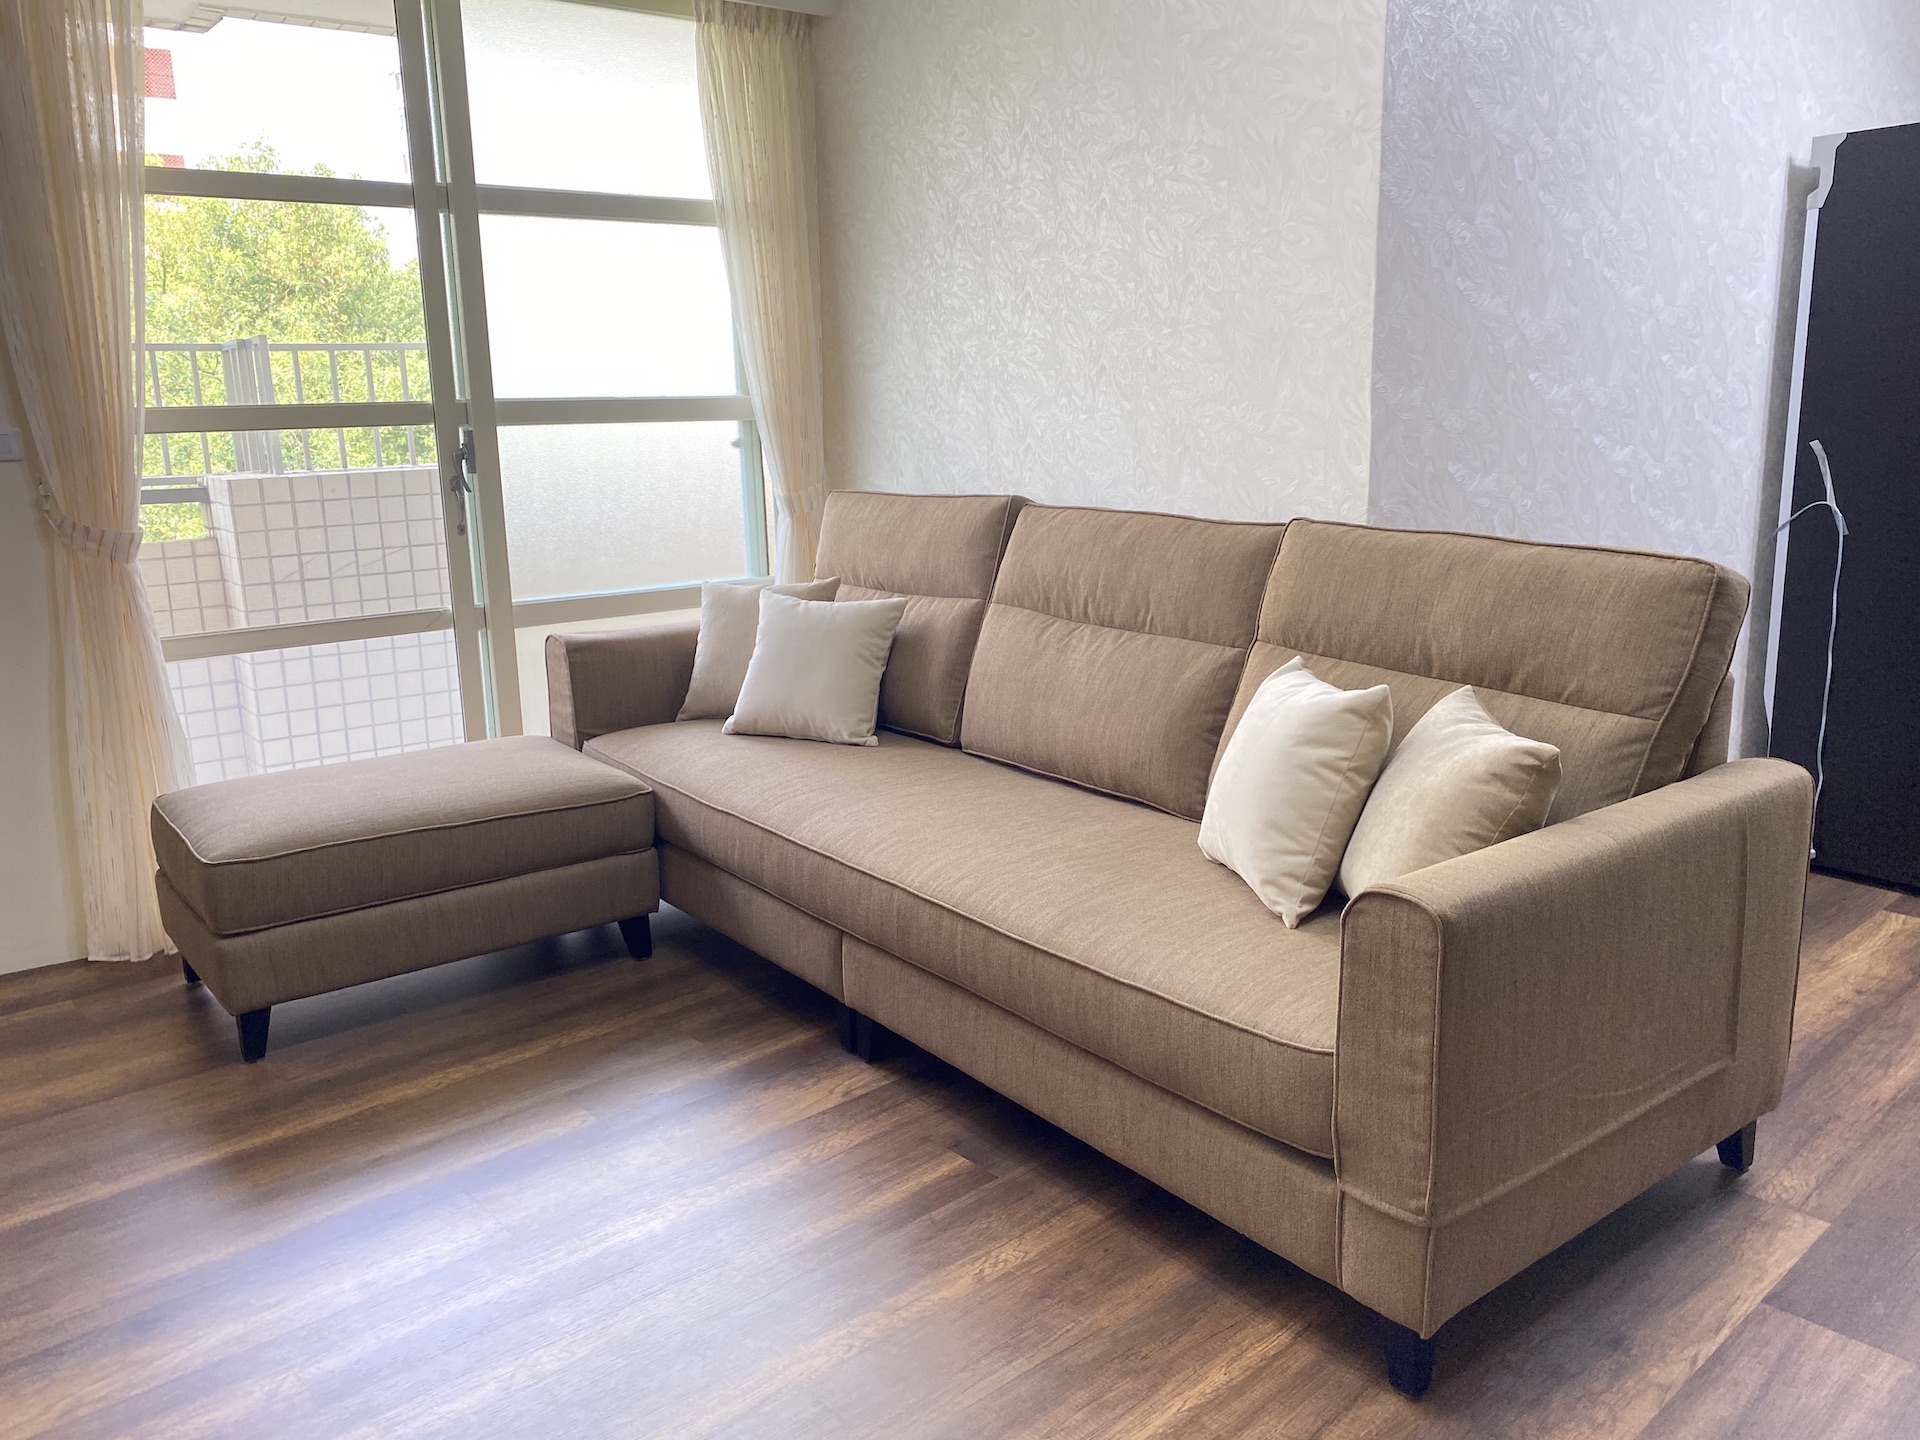 【客戶案例分享】台中太平L型沙發訂製分享